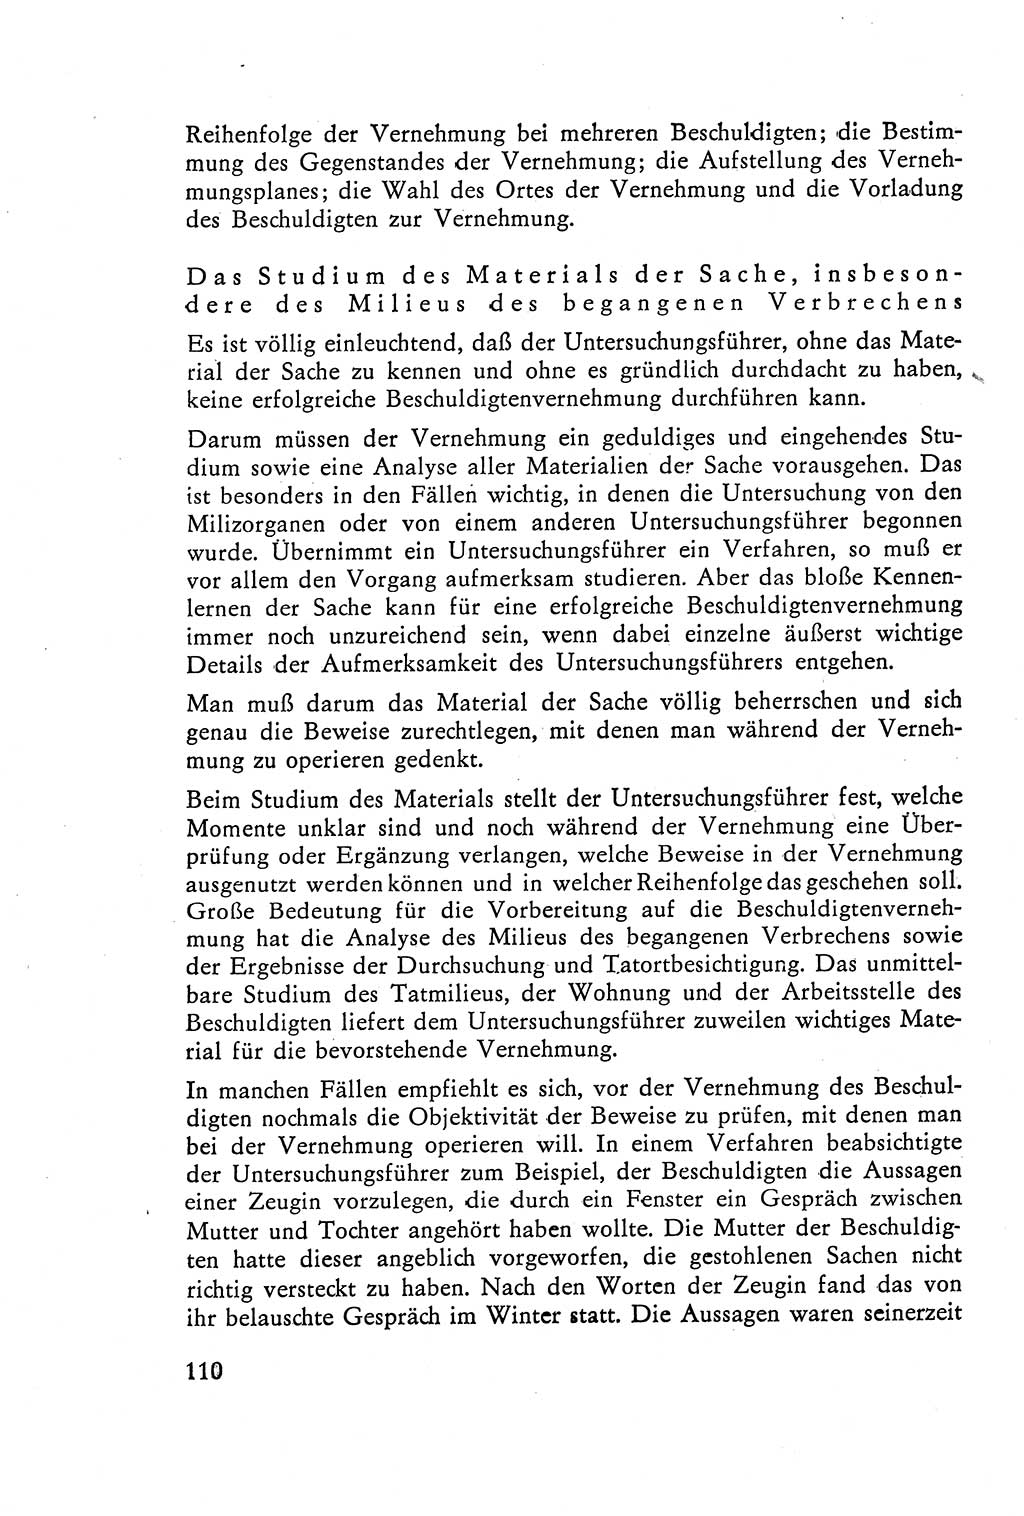 Die Vernehmung [Deutsche Demokratische Republik (DDR)] 1960, Seite 110 (Vern. DDR 1960, S. 110)